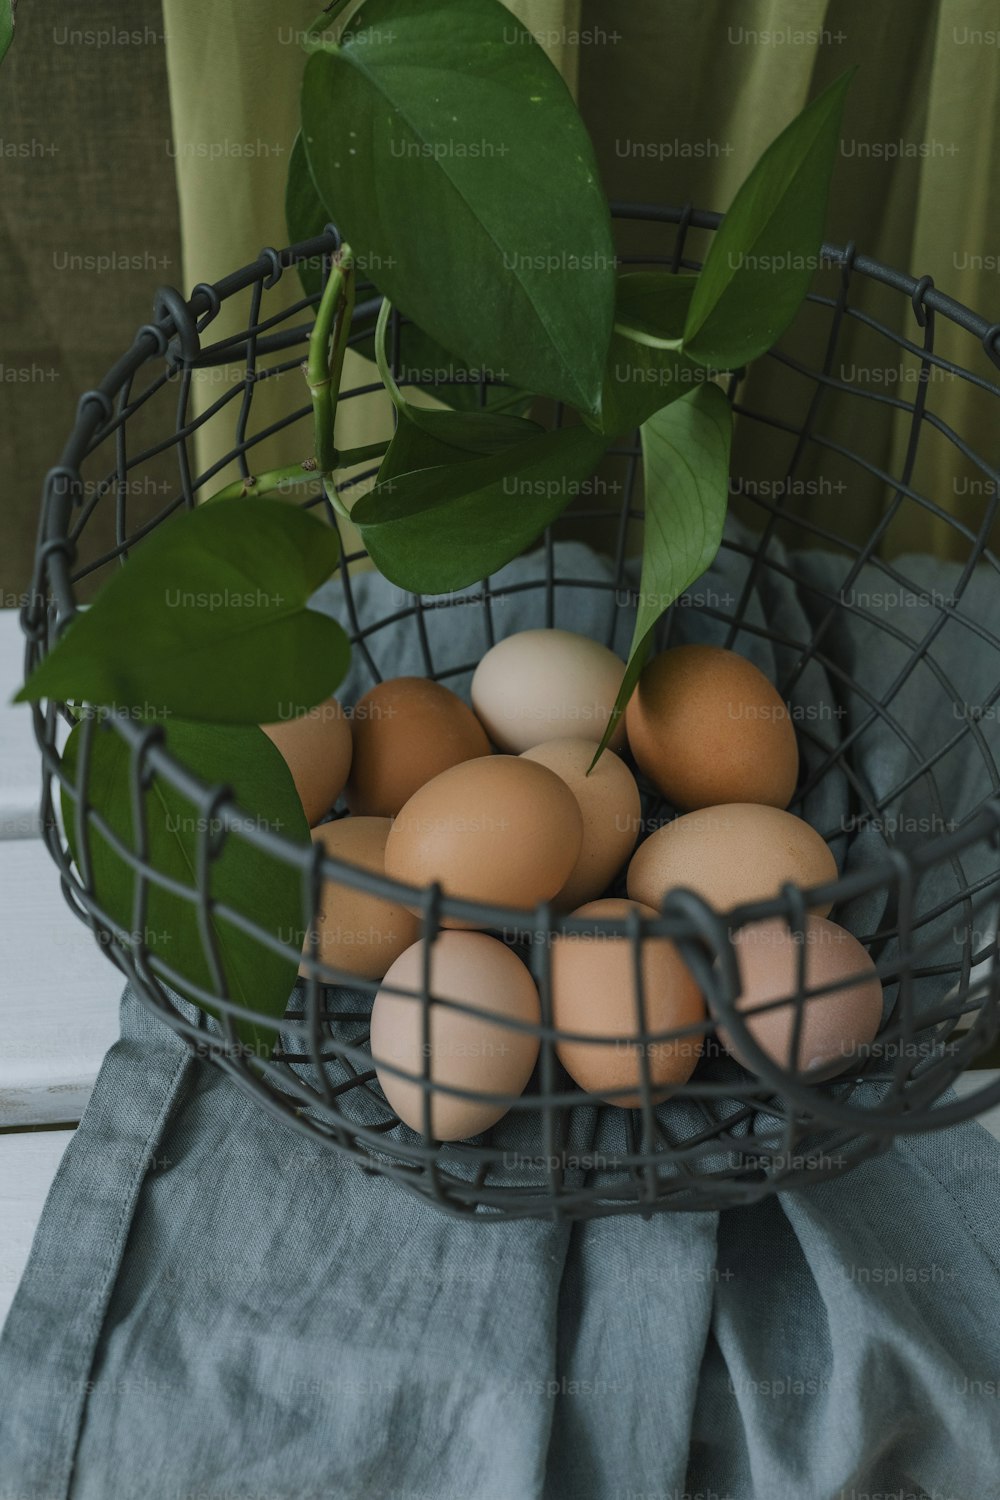 Una canasta de metal llena de huevos encima de una mesa